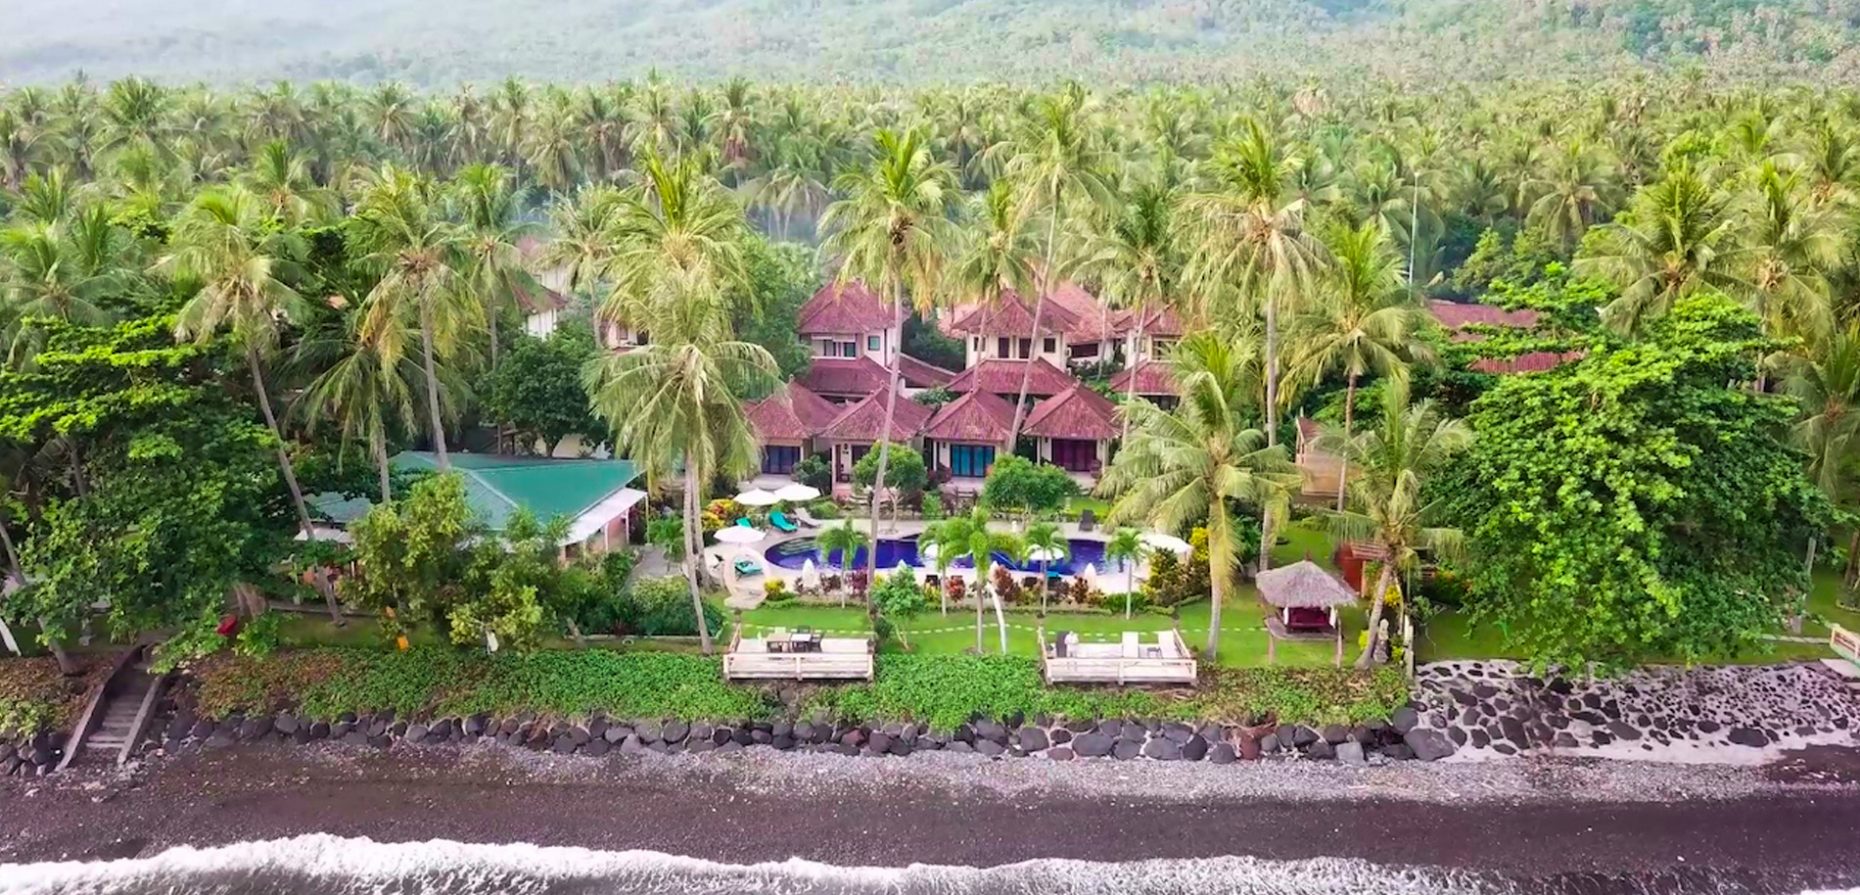 „Zuhause im Paradies“ lautet das Motto des an der Nordküste Balis gelegenen Holiway Garden Resort & Spa. Es bietet Gästen ein Höchstmaß an Wohlbefinden, Harmonie und Komfort.